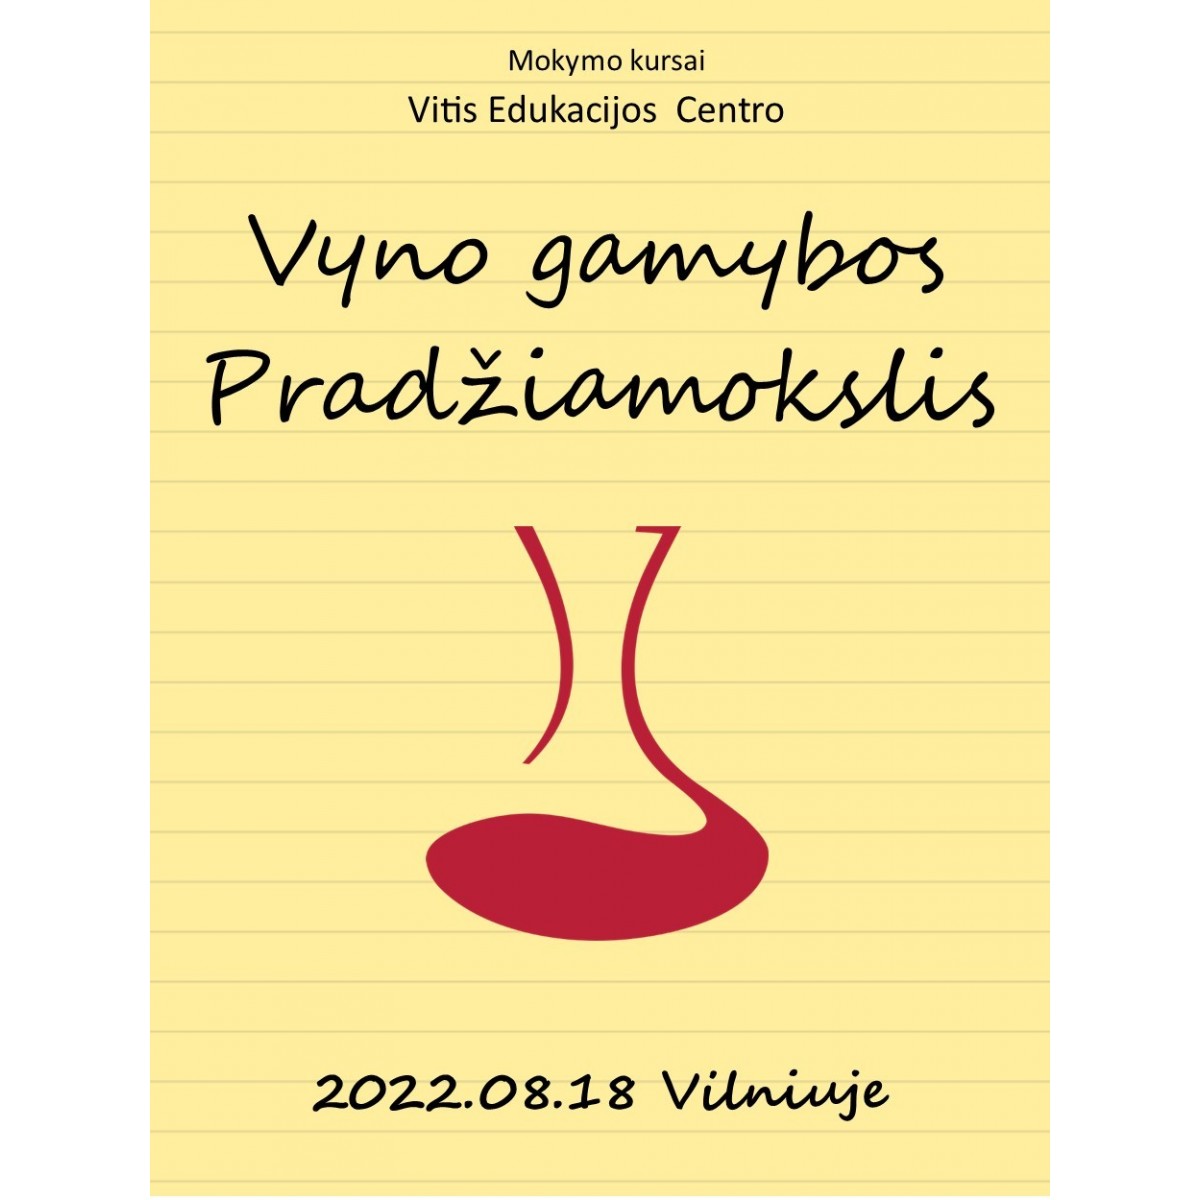 Mokymo kursai Vilniuje 08.18: Vyno gamybos pradžiamokslis